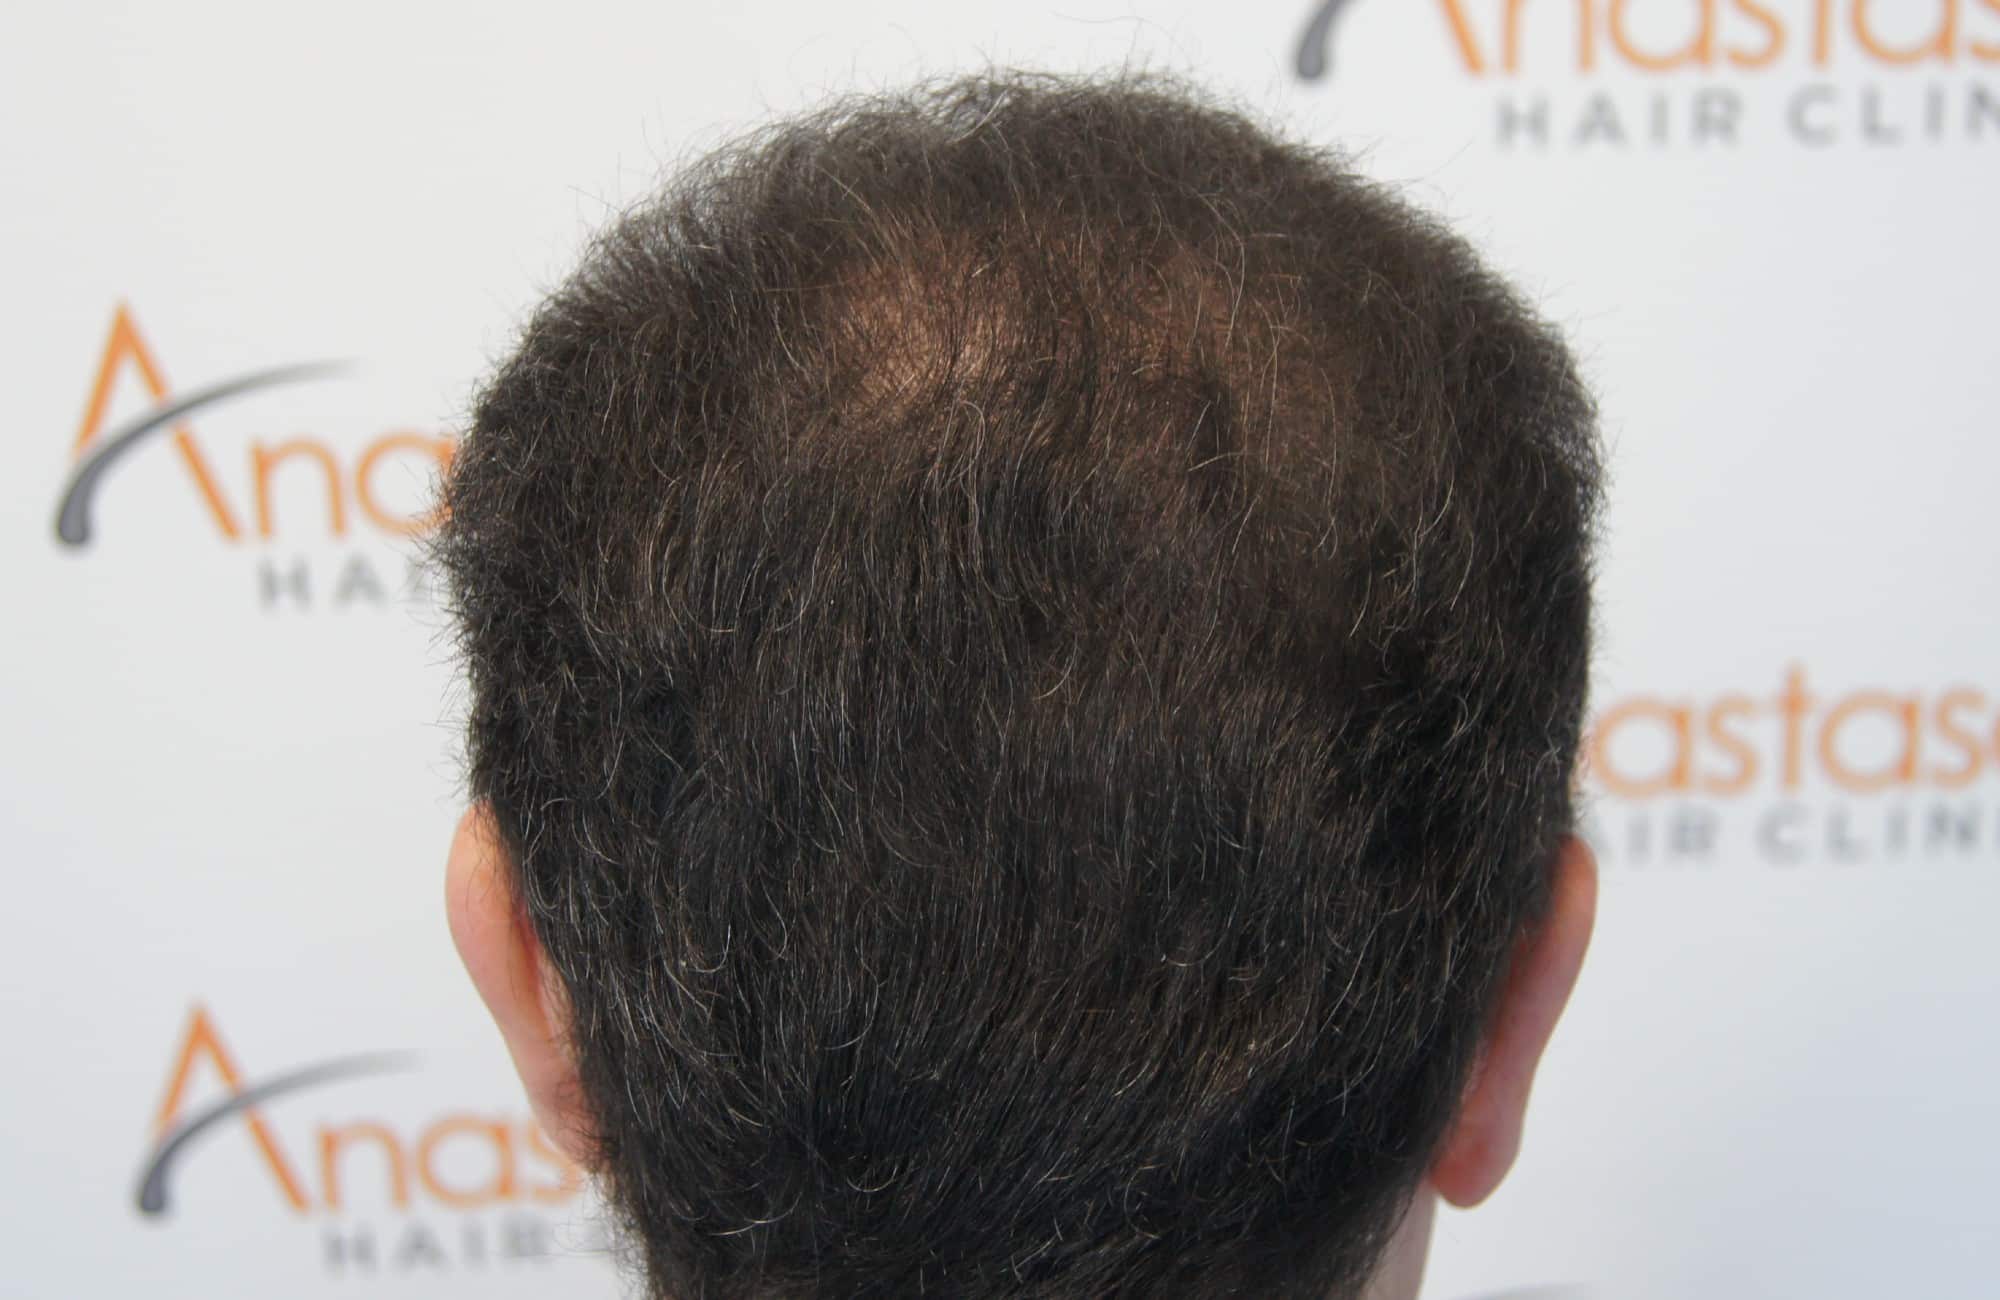 περιστατικο μετα τη μεταμόσχευση μαλλιων με 3600 fus στην anastasakis hair clinic 9